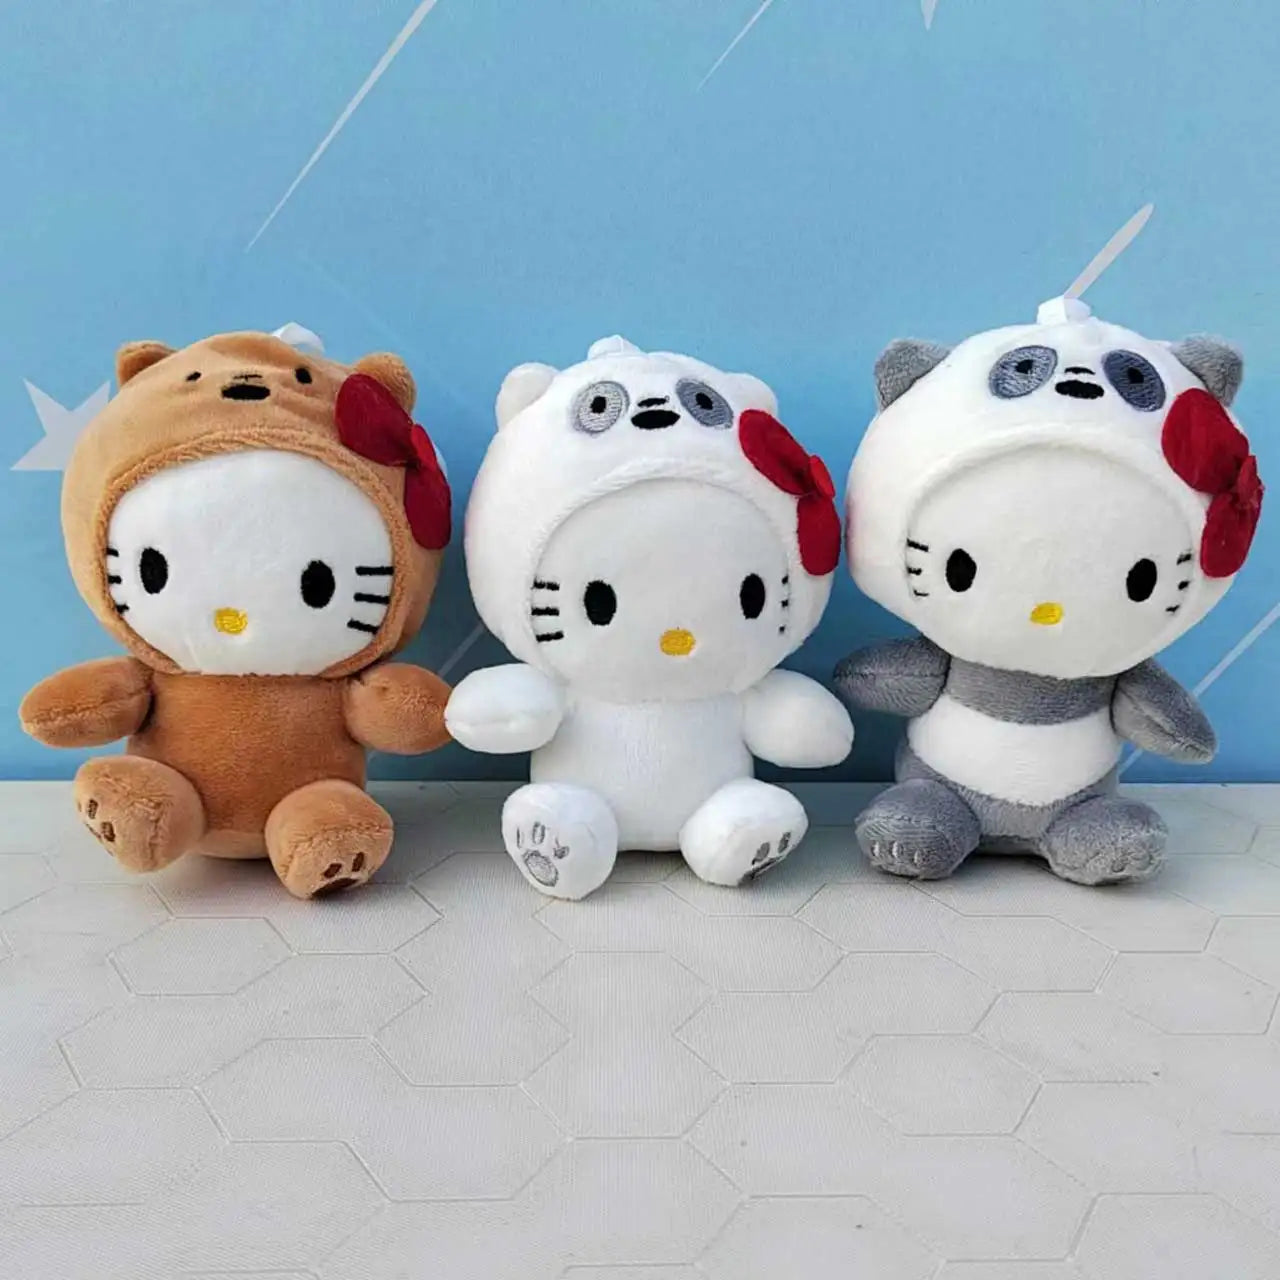 Sanrio Plush Toy Kawaii Hello Kitty Keychain Plushies